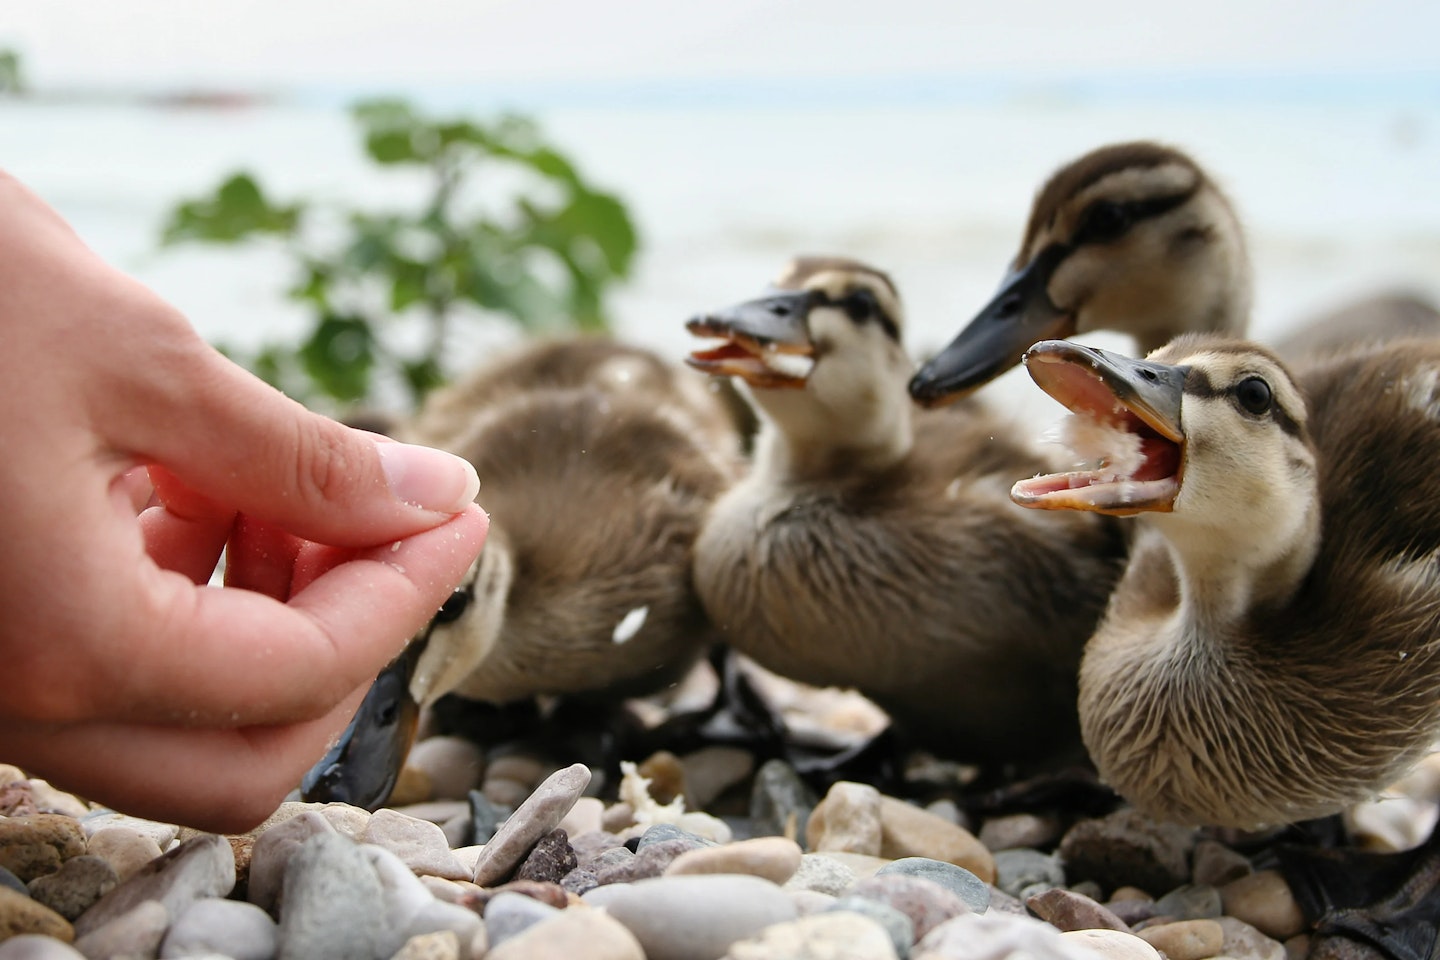 ducklings being fed bread